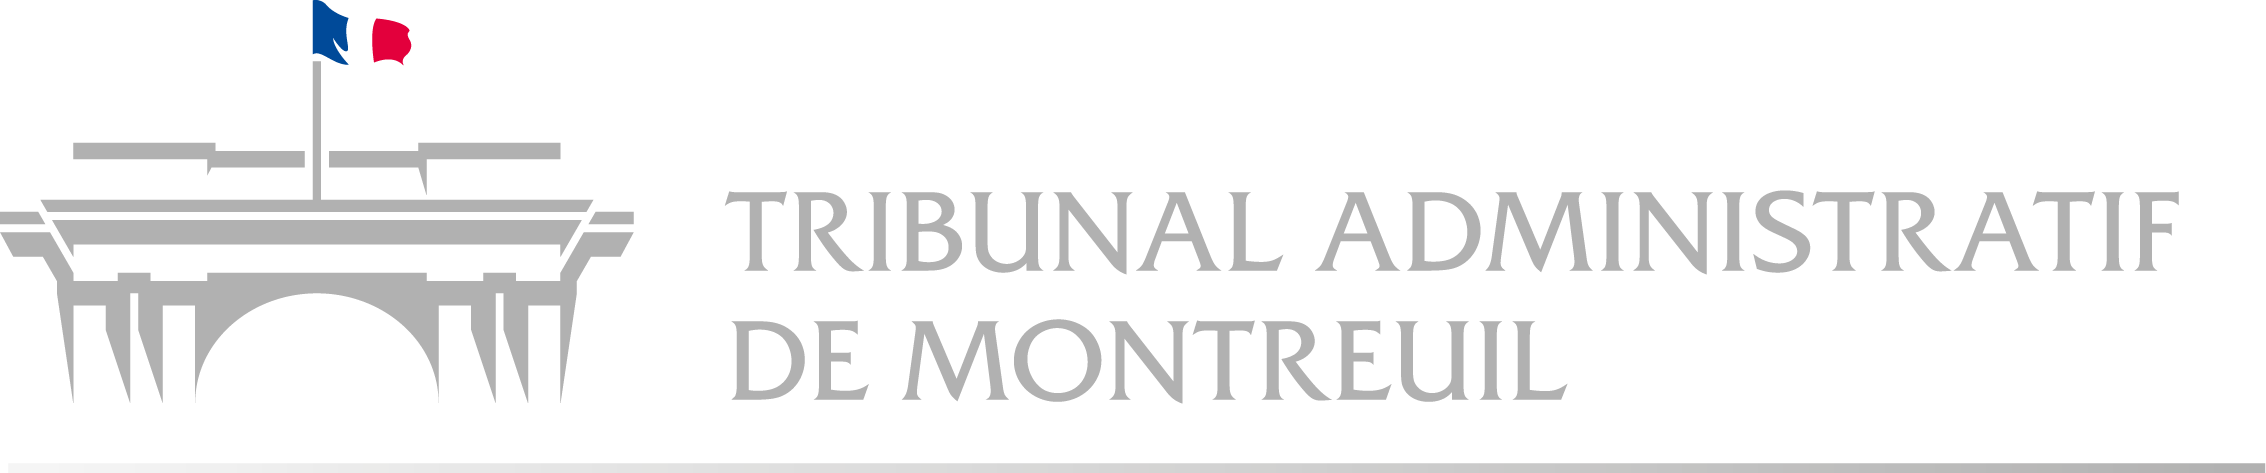 Tribunal administratif de Montreuil - Retour à l'accueil